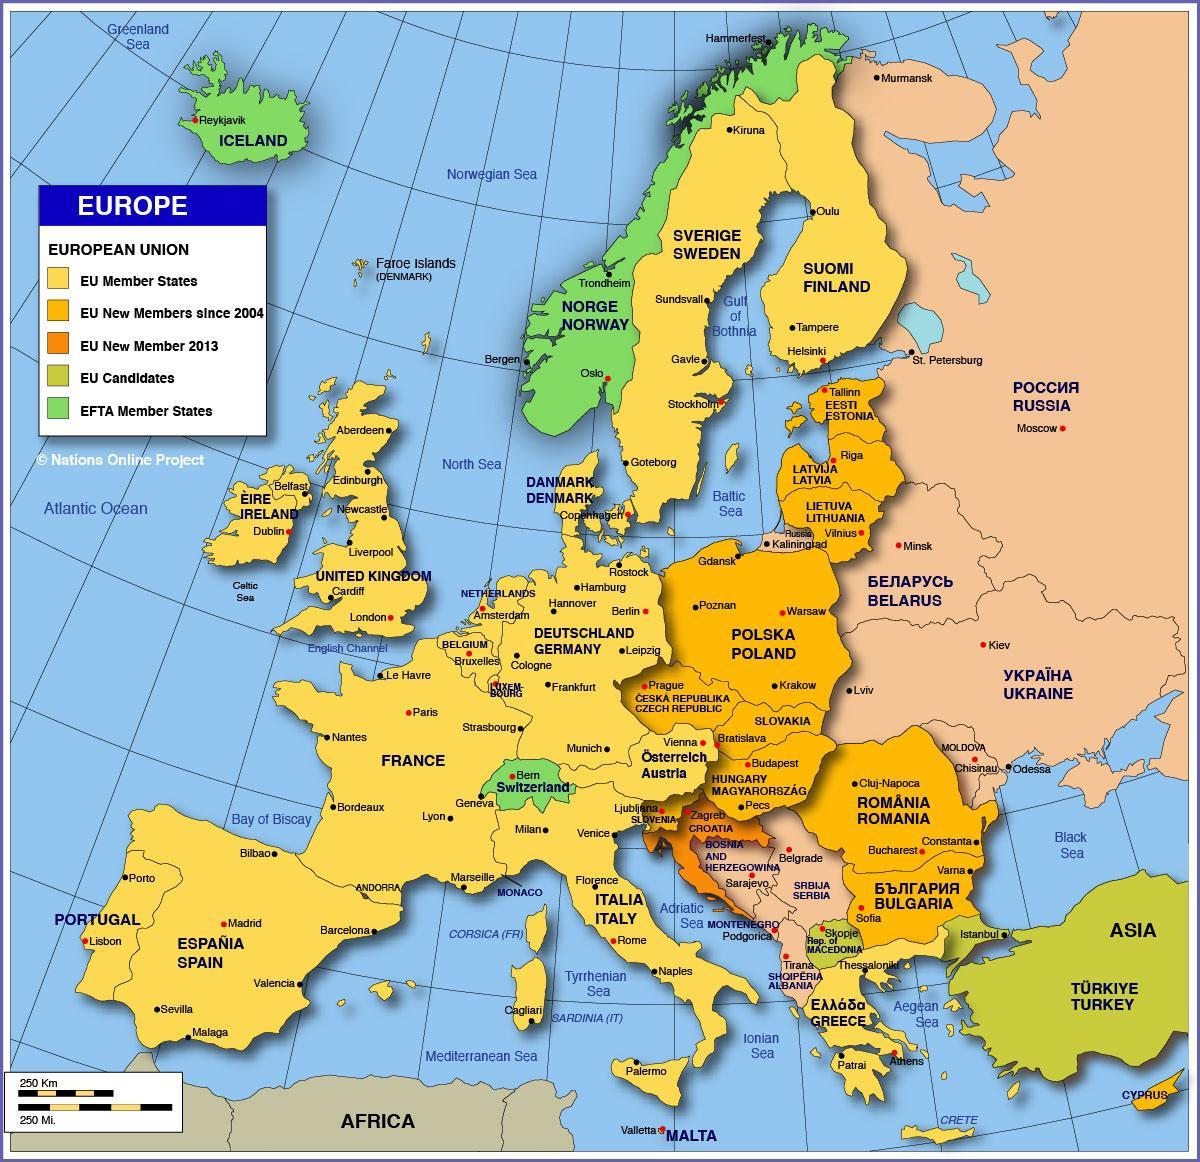 Москва на мапи Европе